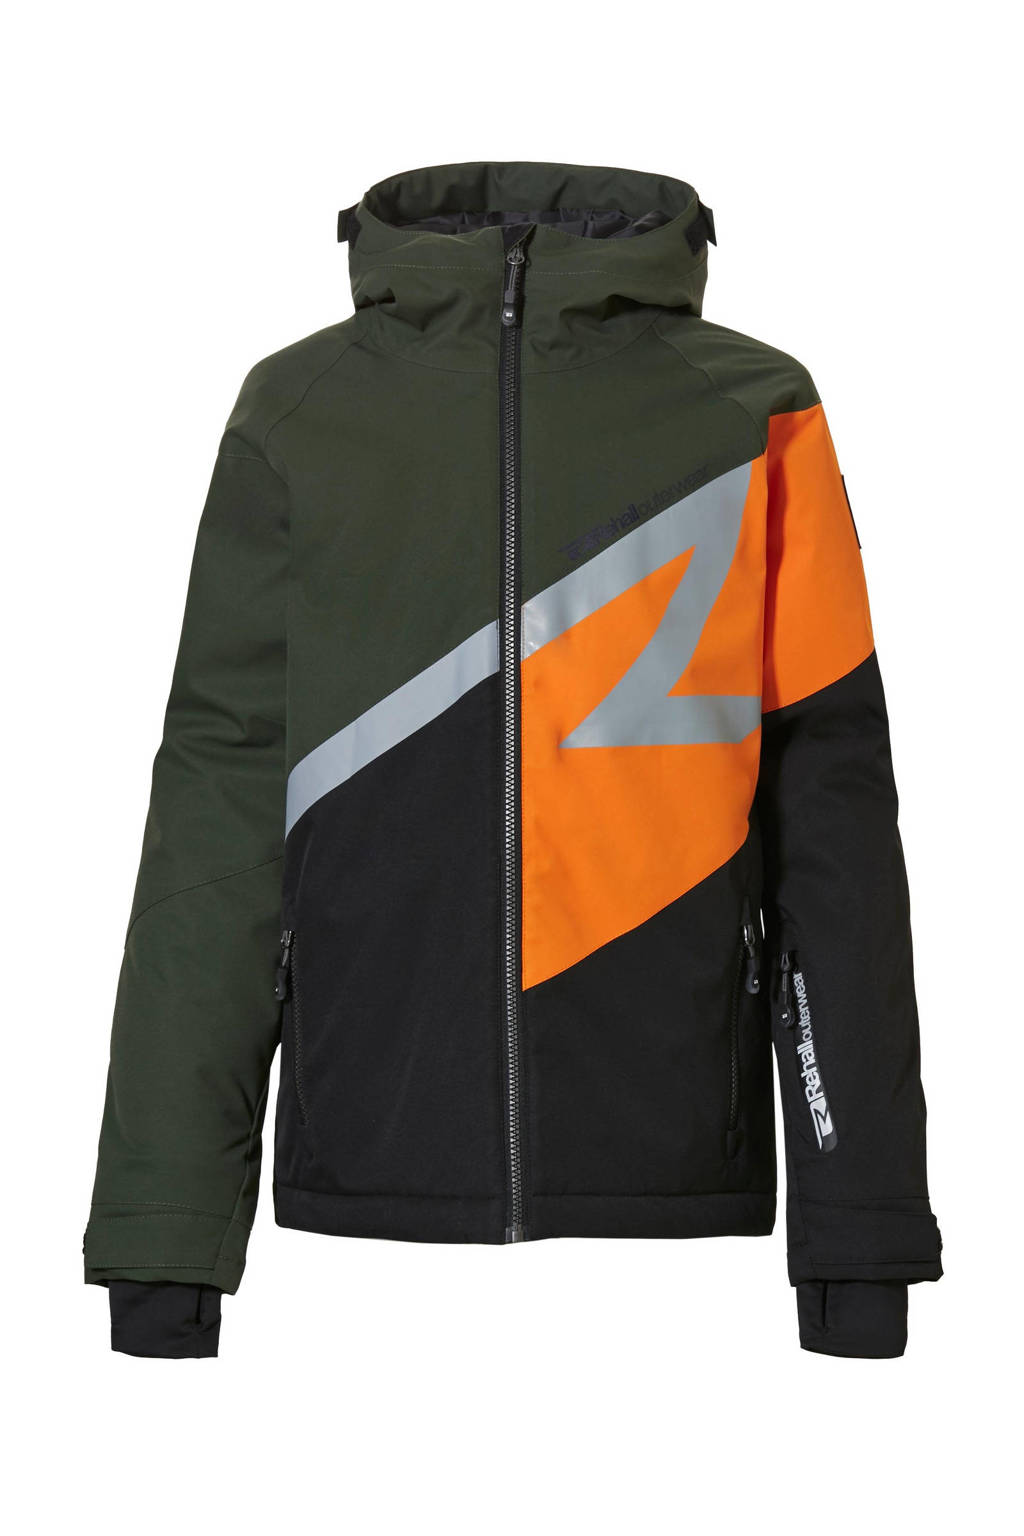 Rehall ski-jack Greyson-R jr groen/zwart/oranje, Groen/zwart/oranje